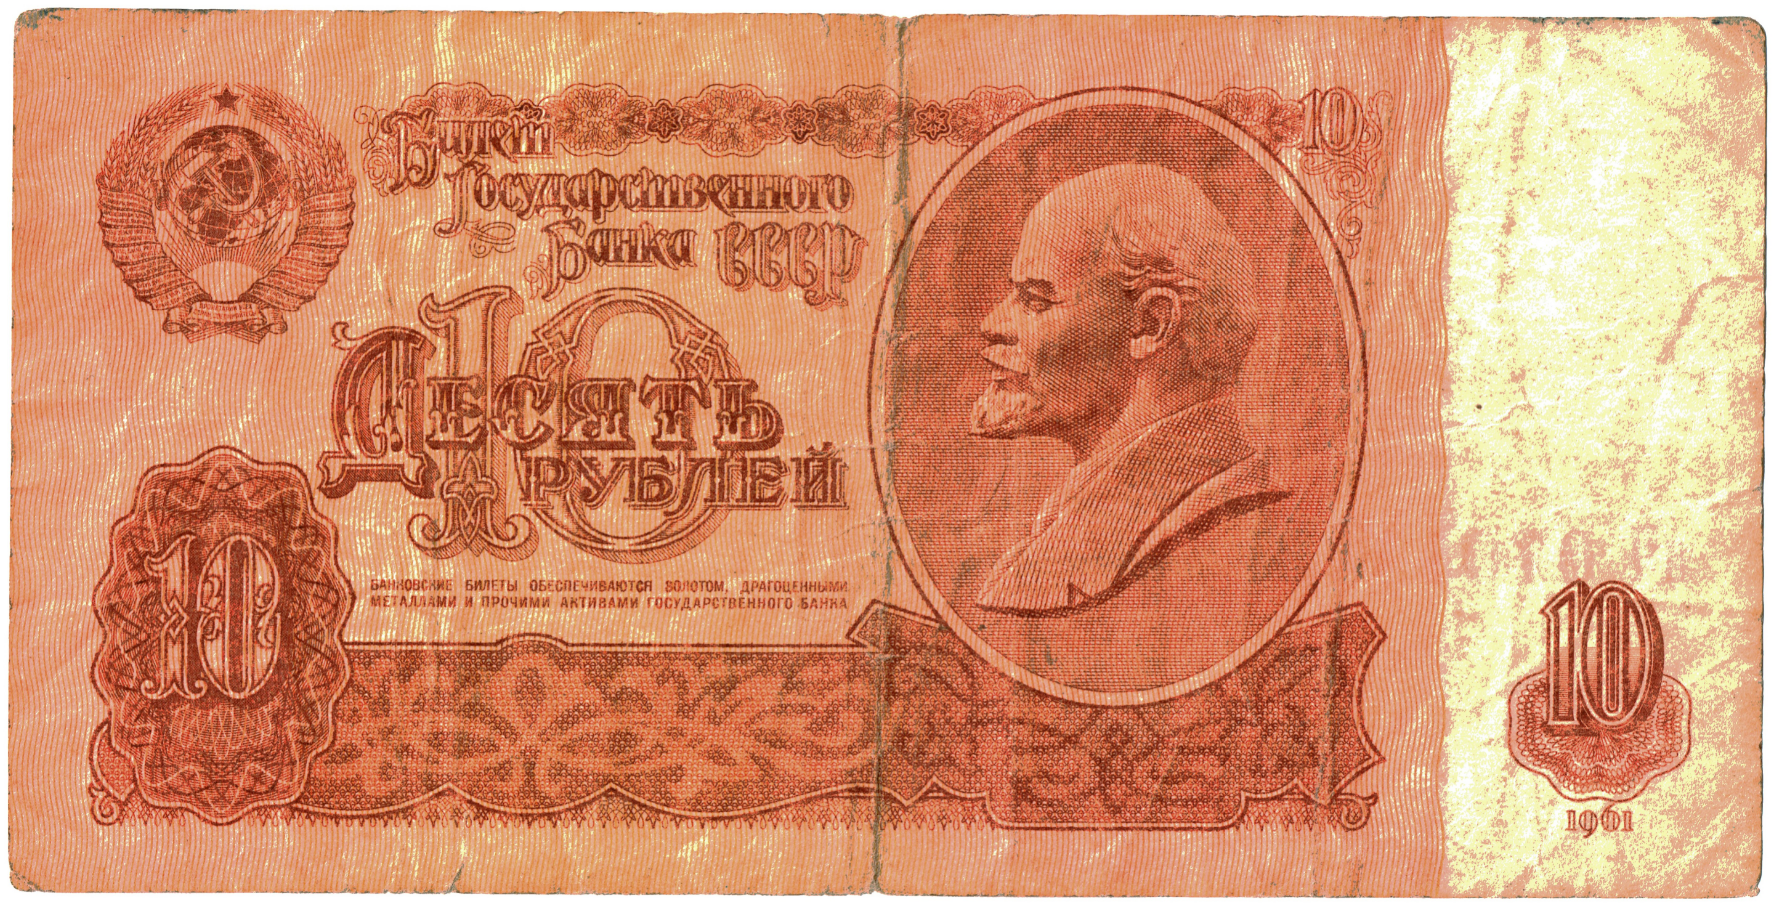 1961 Soviet Union 10 Rubles.png